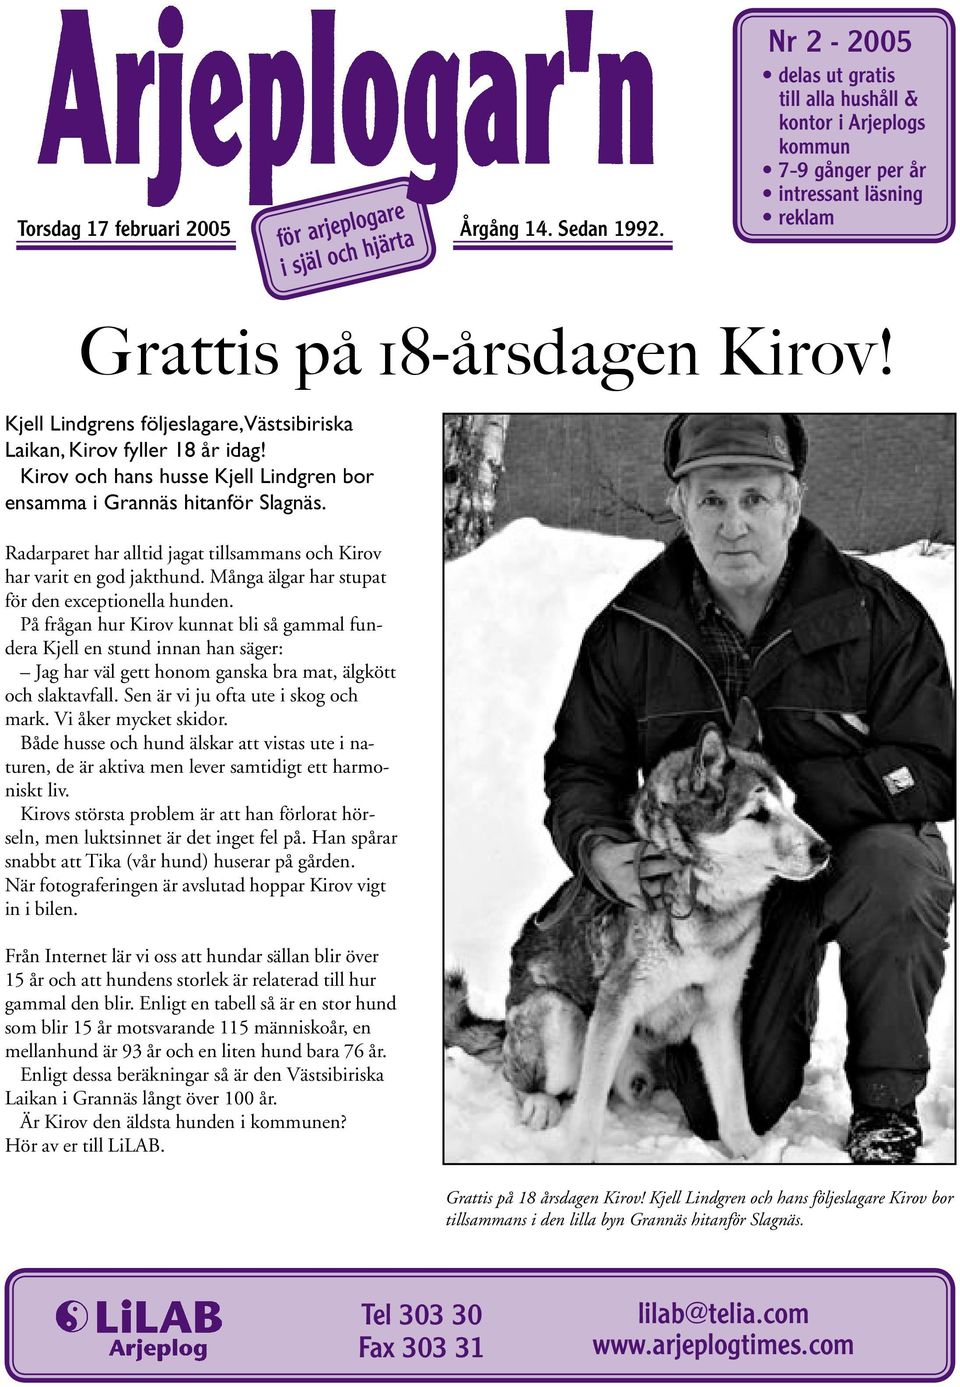 Kjell Lindgrens följeslagare, Västsibiriska Laikan, Kirov fyller 18 år idag! Kirov och hans husse Kjell Lindgren bor ensamma i Grannäs hitanför Slagnäs.